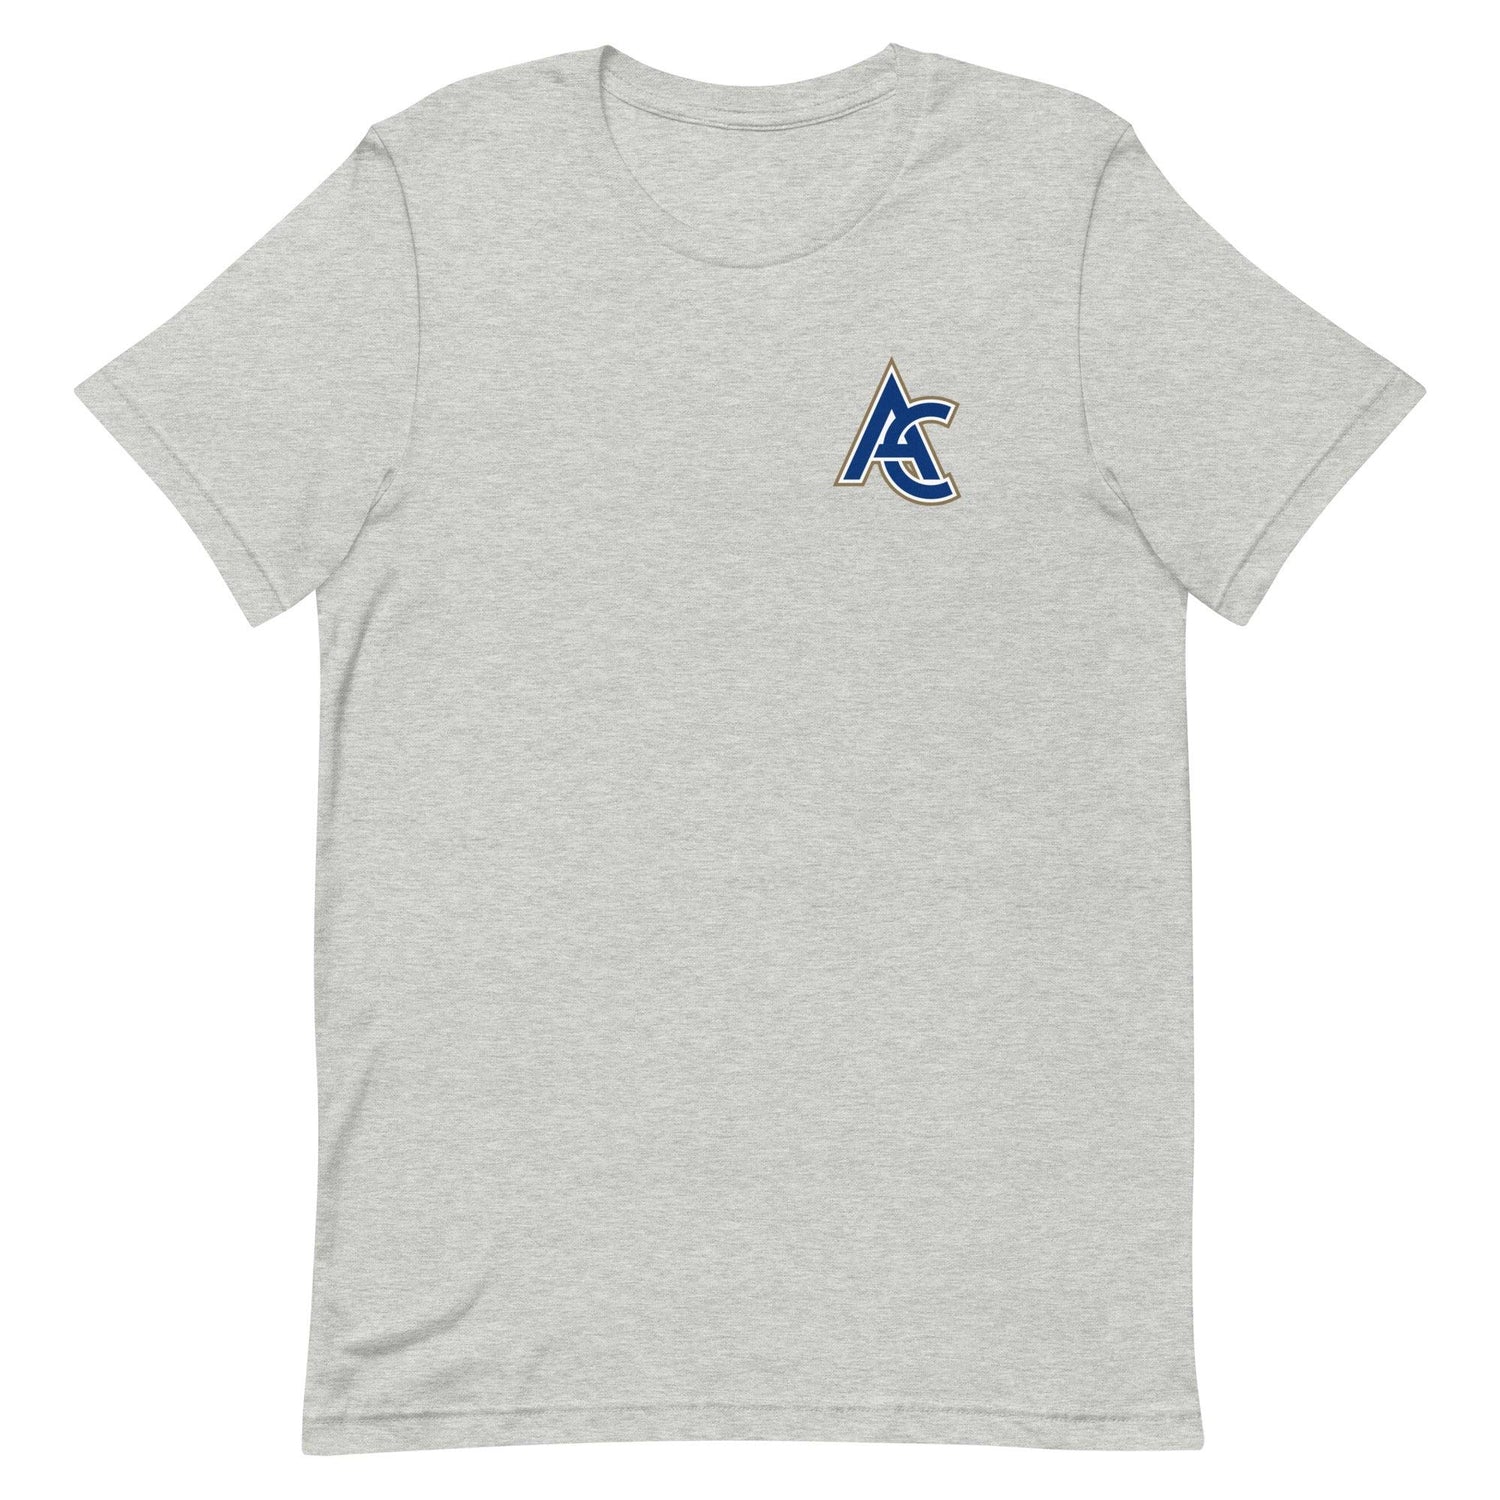 Austin Cox "Elite" t-shirt - Fan Arch